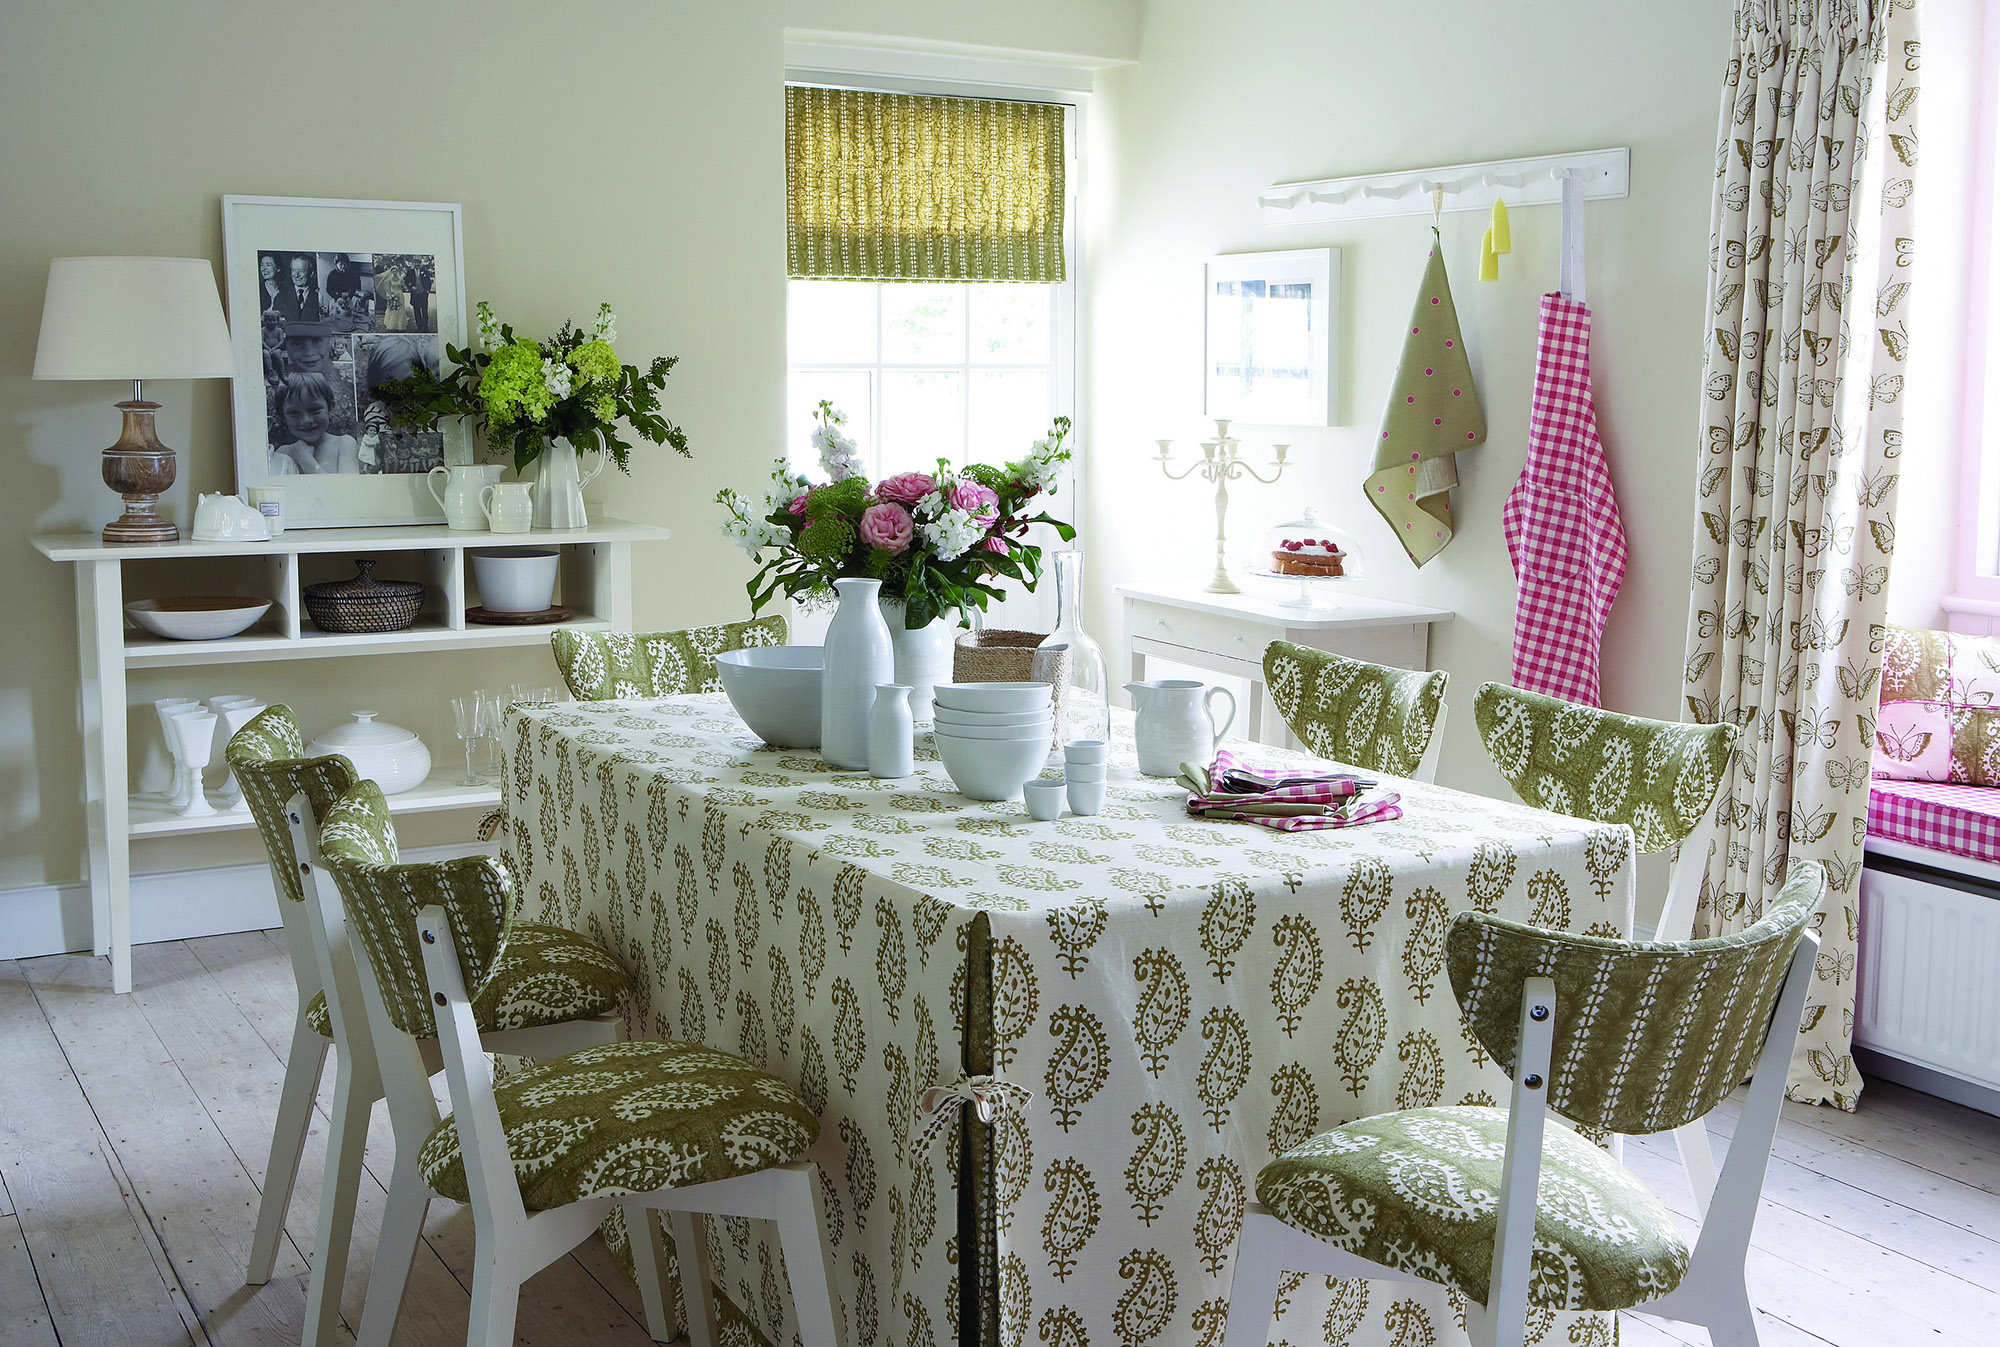 Λευκές-πράσινες όμορφες καρέκλες στη φωτεινή κουζίνα